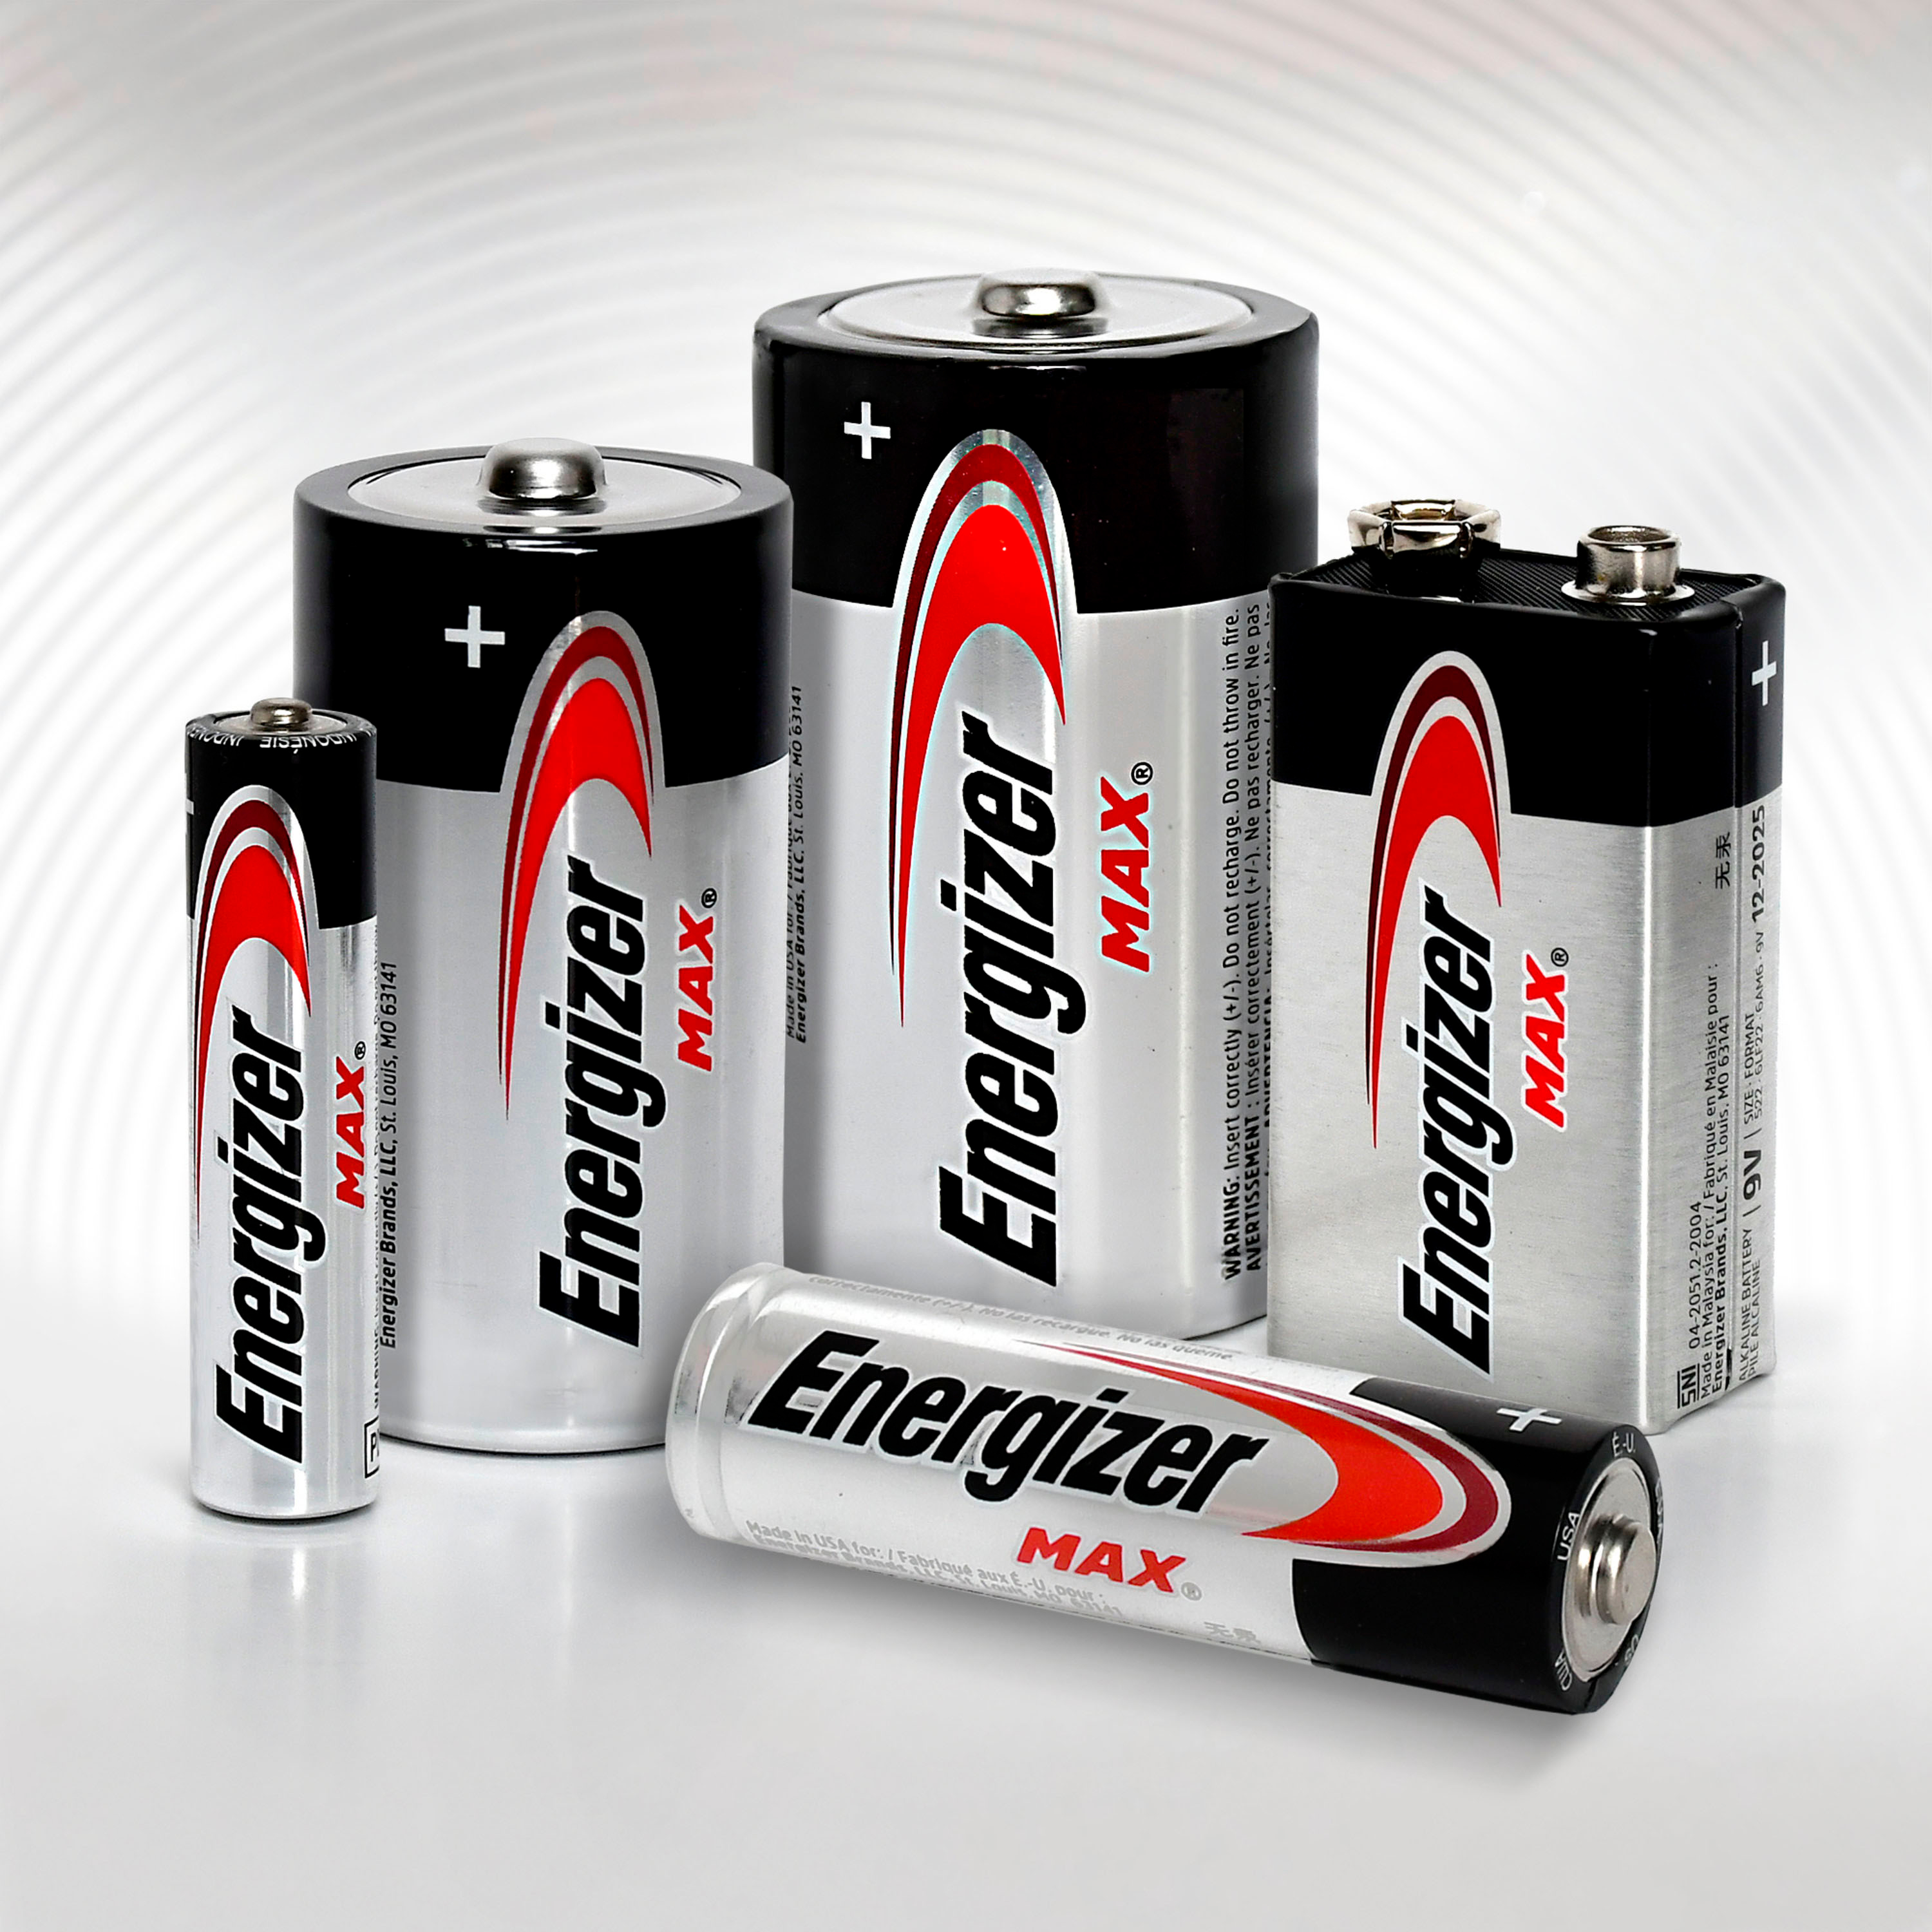 EN93  Basics Alkaline Batteries C, 1.5 V —